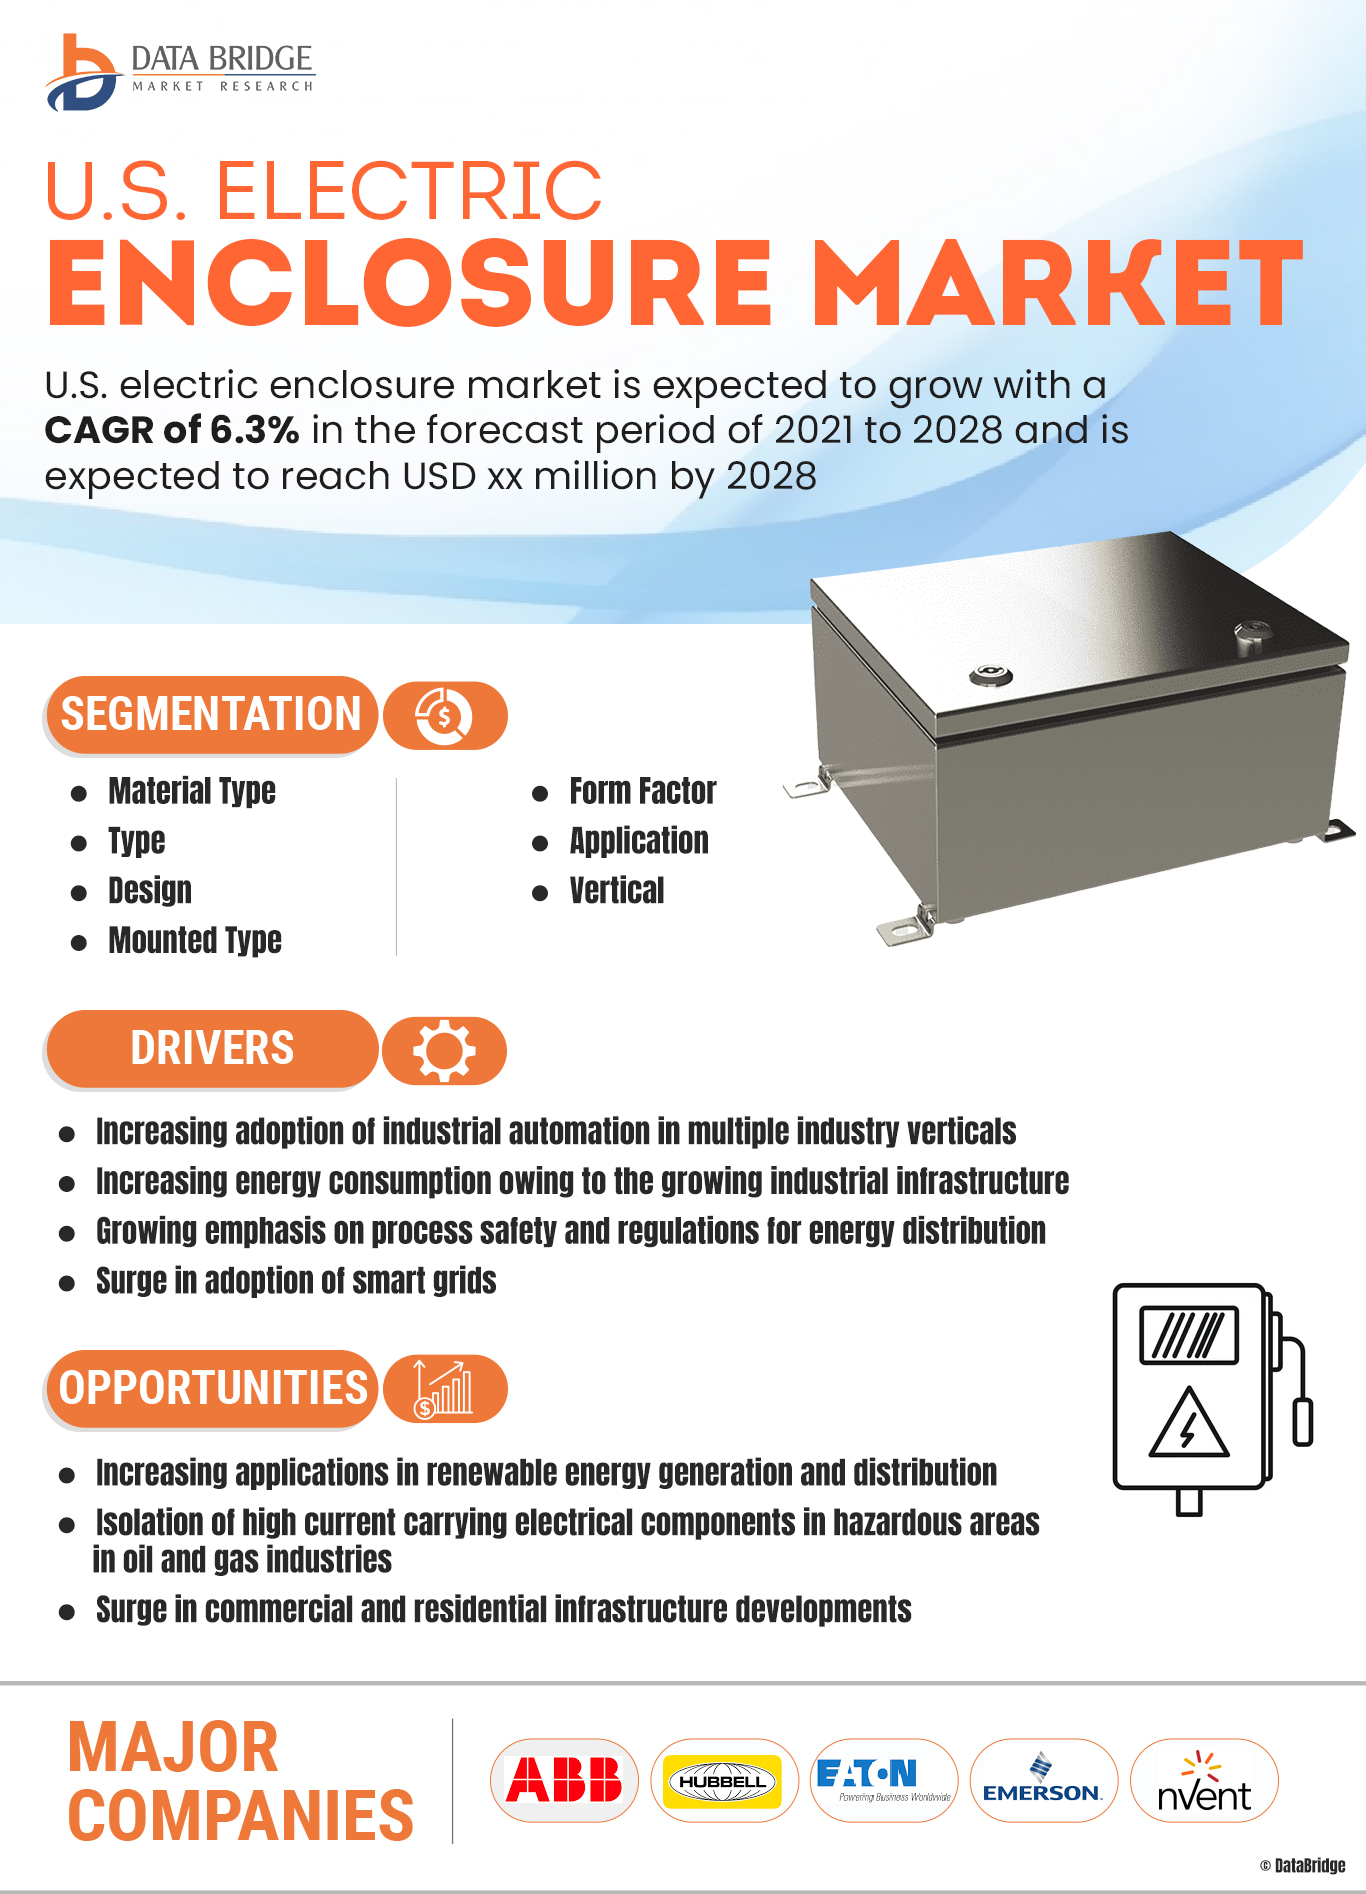 U.S. Electric Enclosure Market